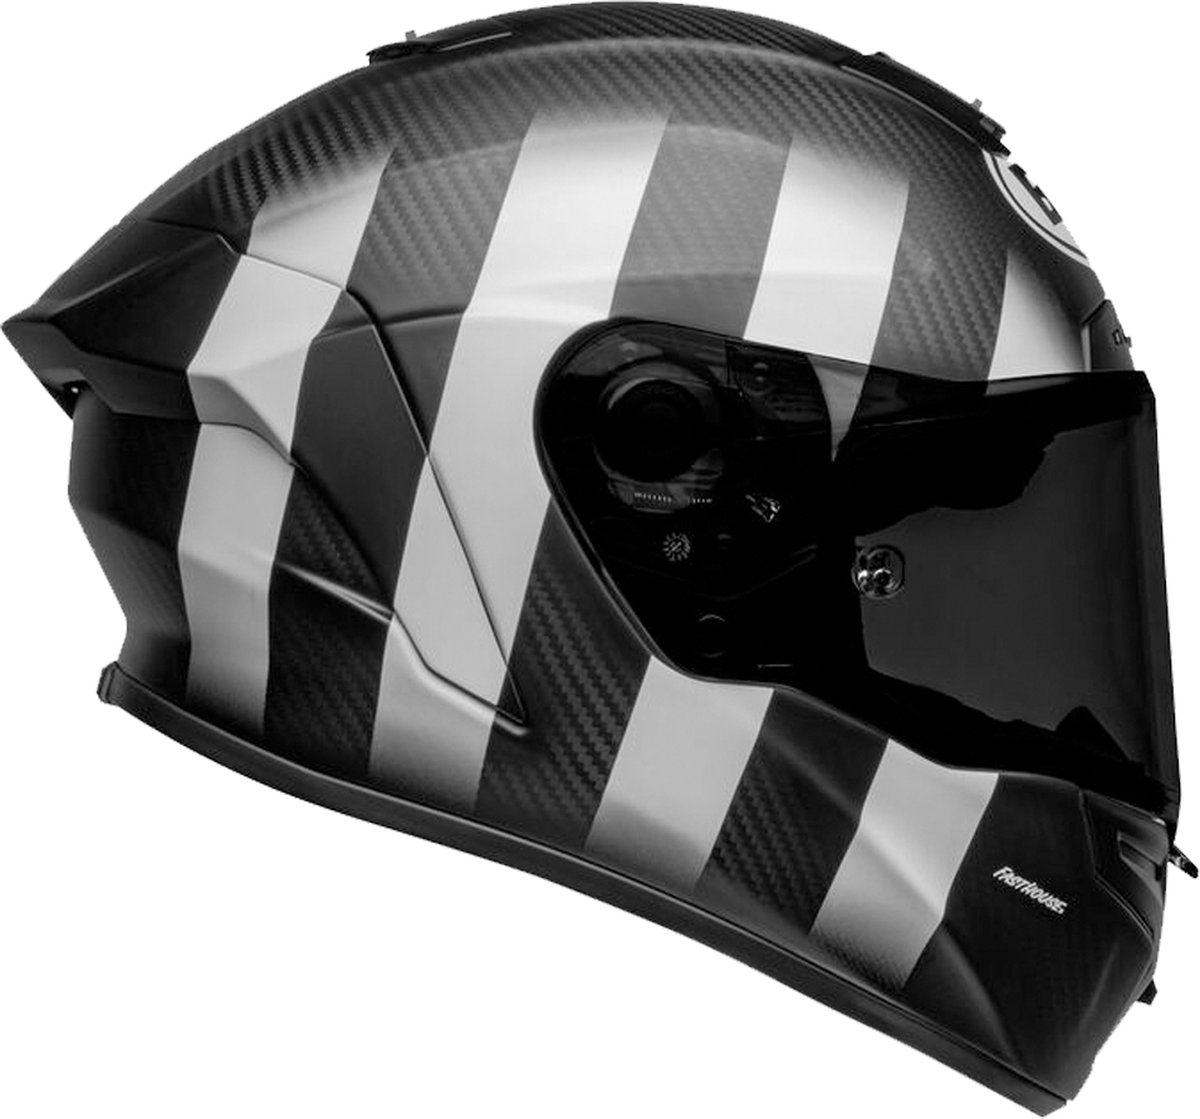 Bell Race Star Dlx Flex Fasthouse Street Punk Replica Matte Black Helmet Full Face 2XL - Maat 2XL - Helm